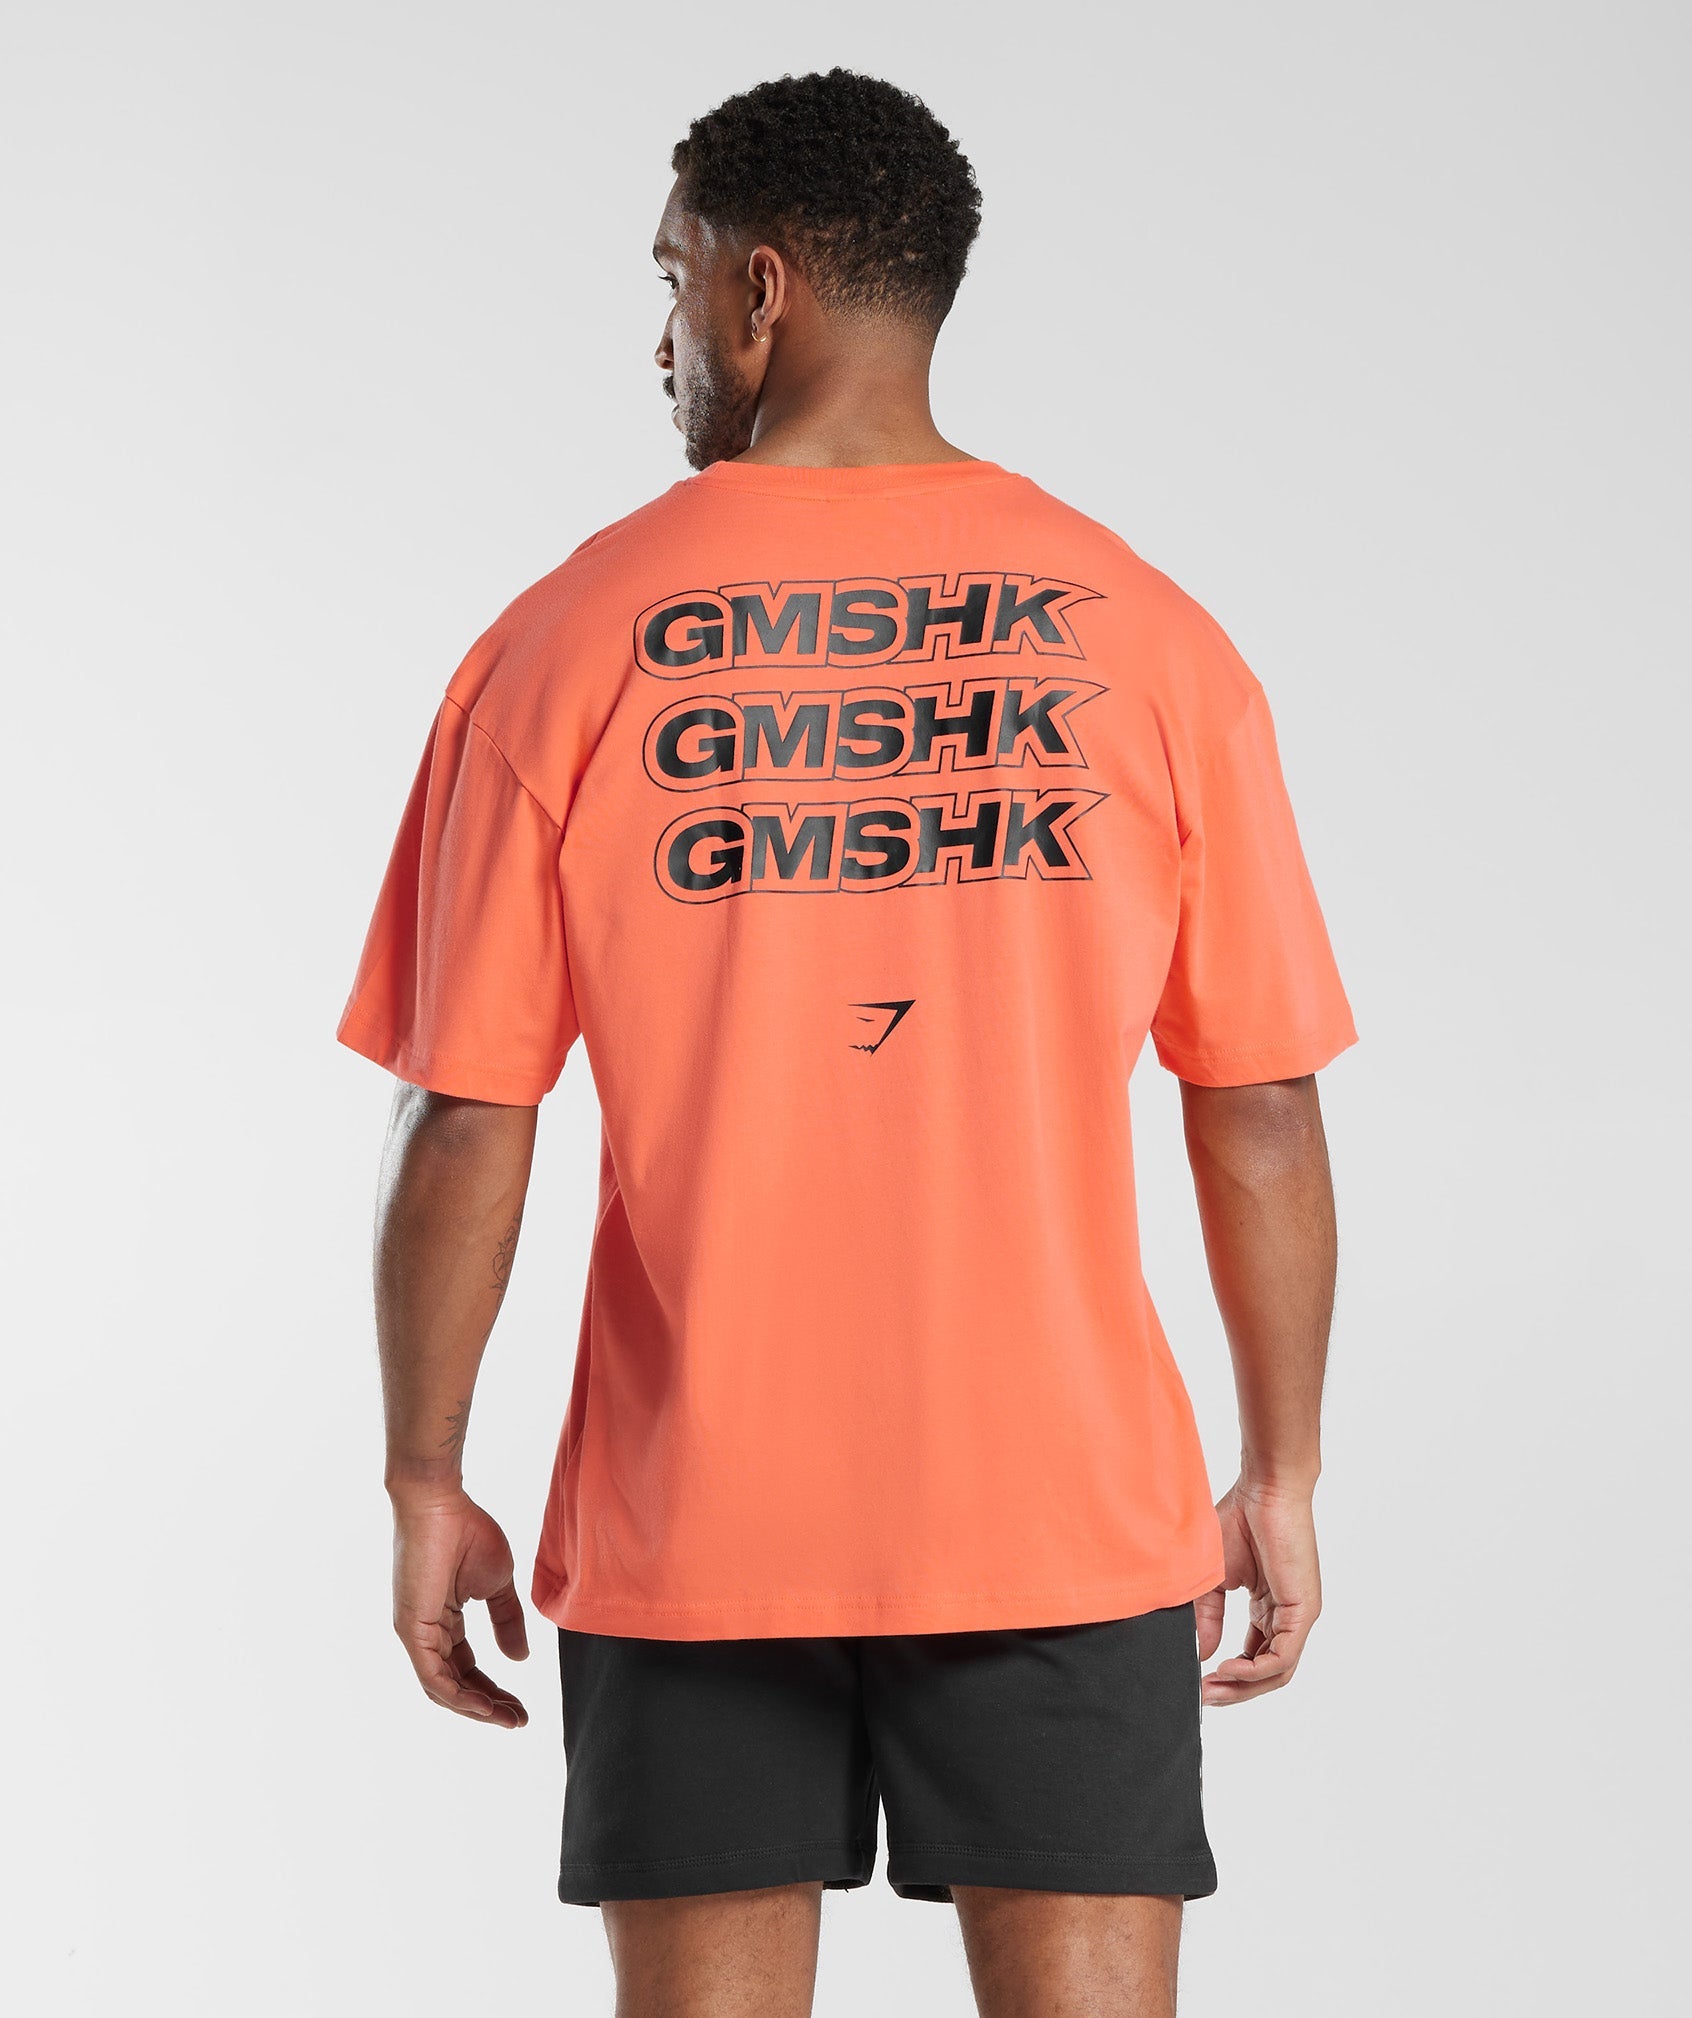 GMSHK Oversized T-Shirt